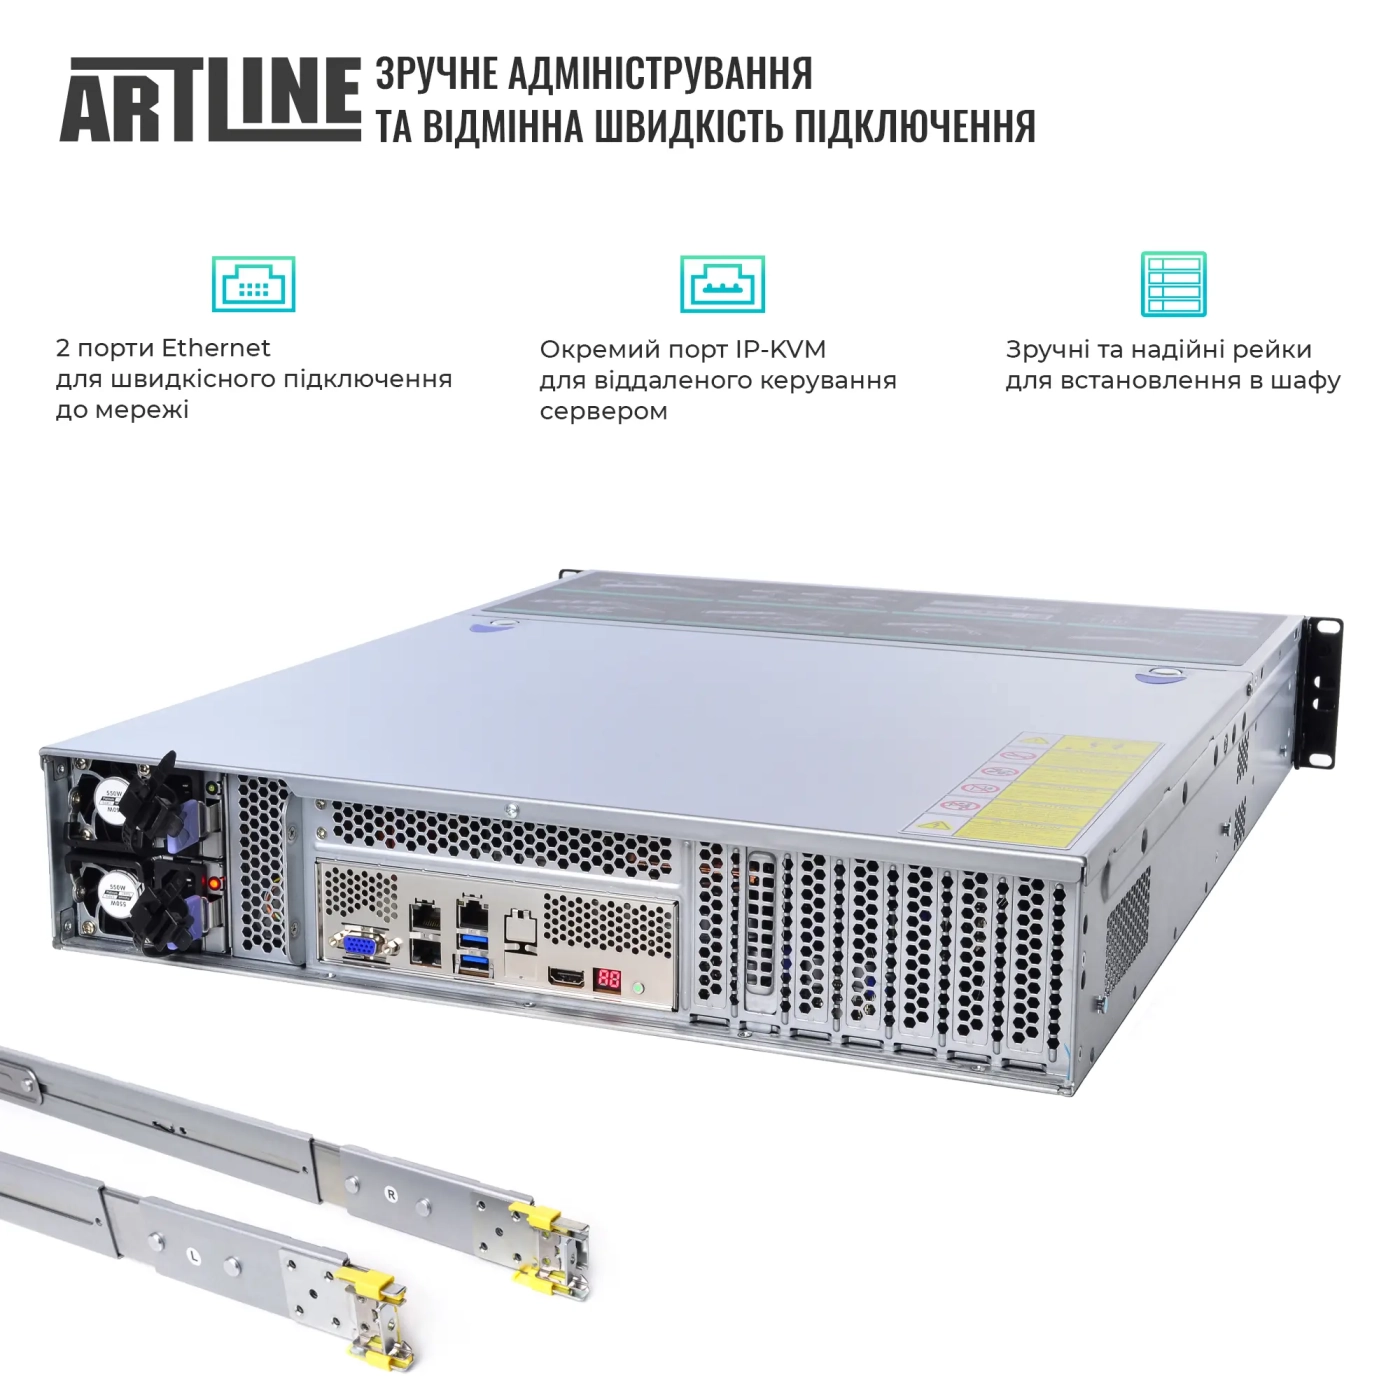 Купить Сервер ARTLINE Business R34 (R34v25) - фото 3